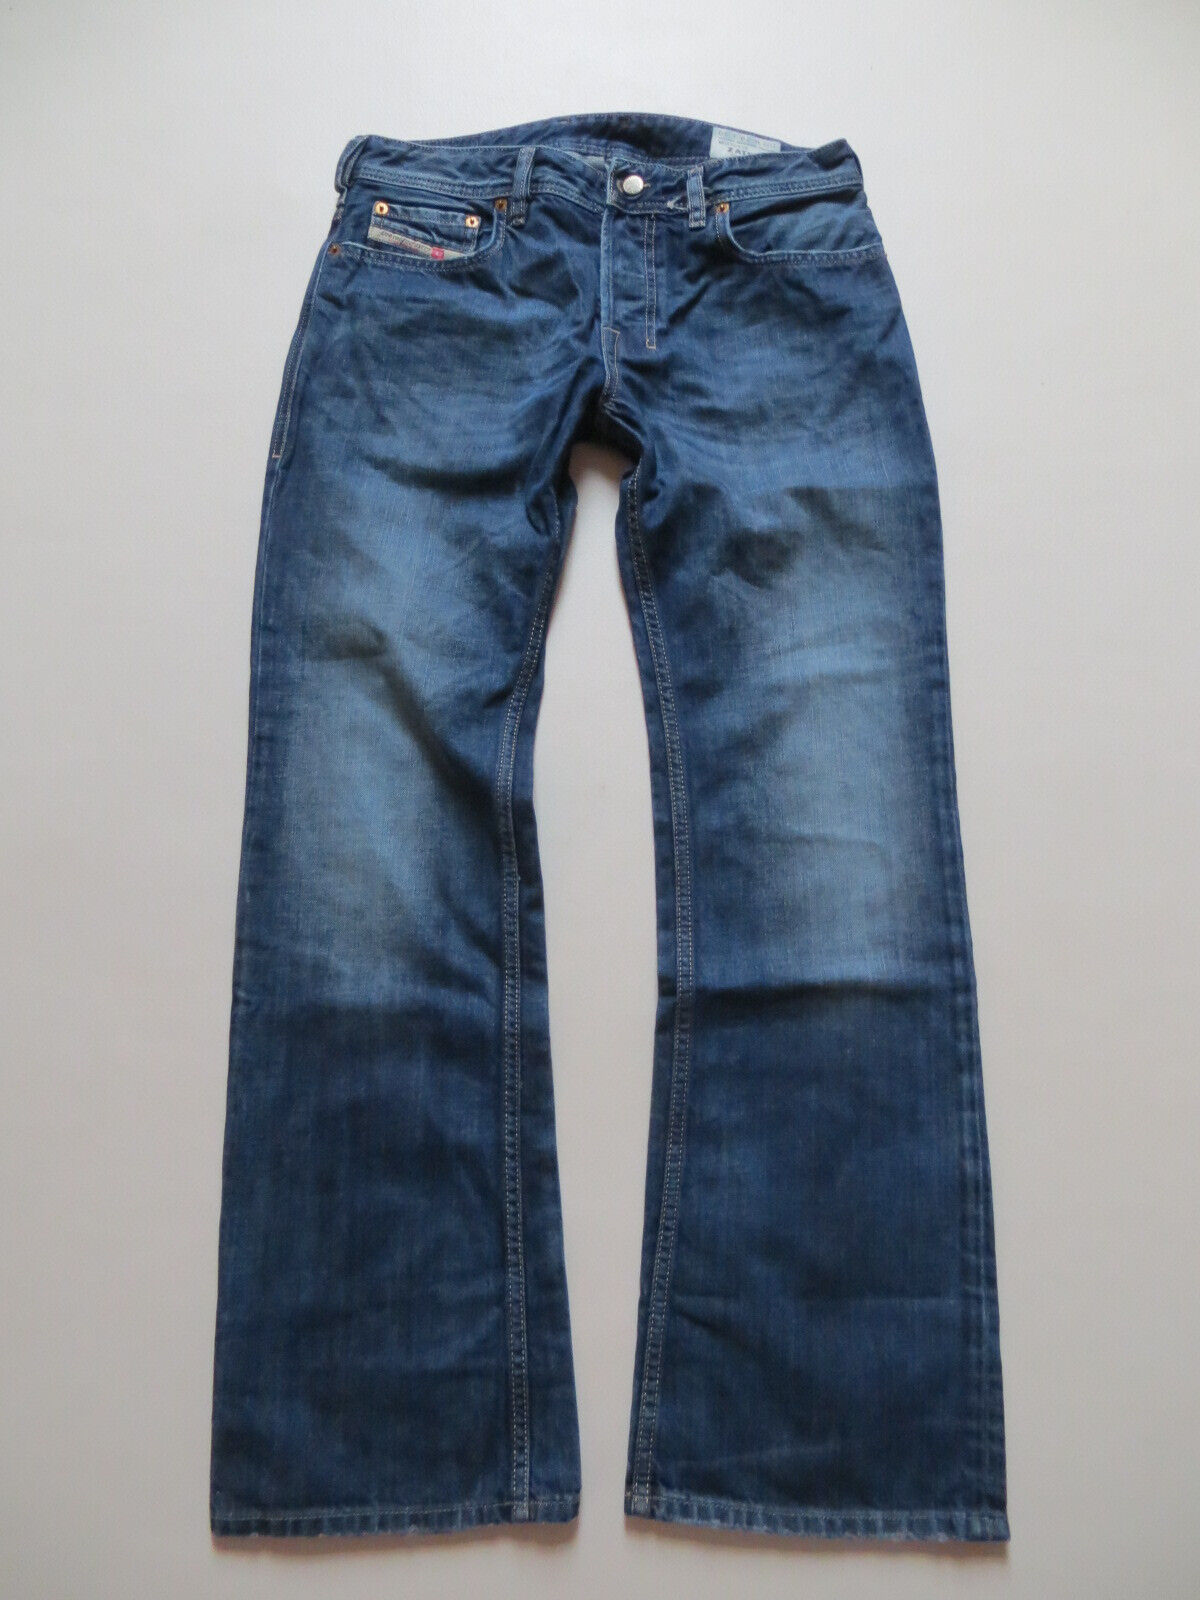 Pantaloni jeans Diesel ZATINY 008XR lavaggio, W 29/L 30, denim vintage taglio boot, CULT!